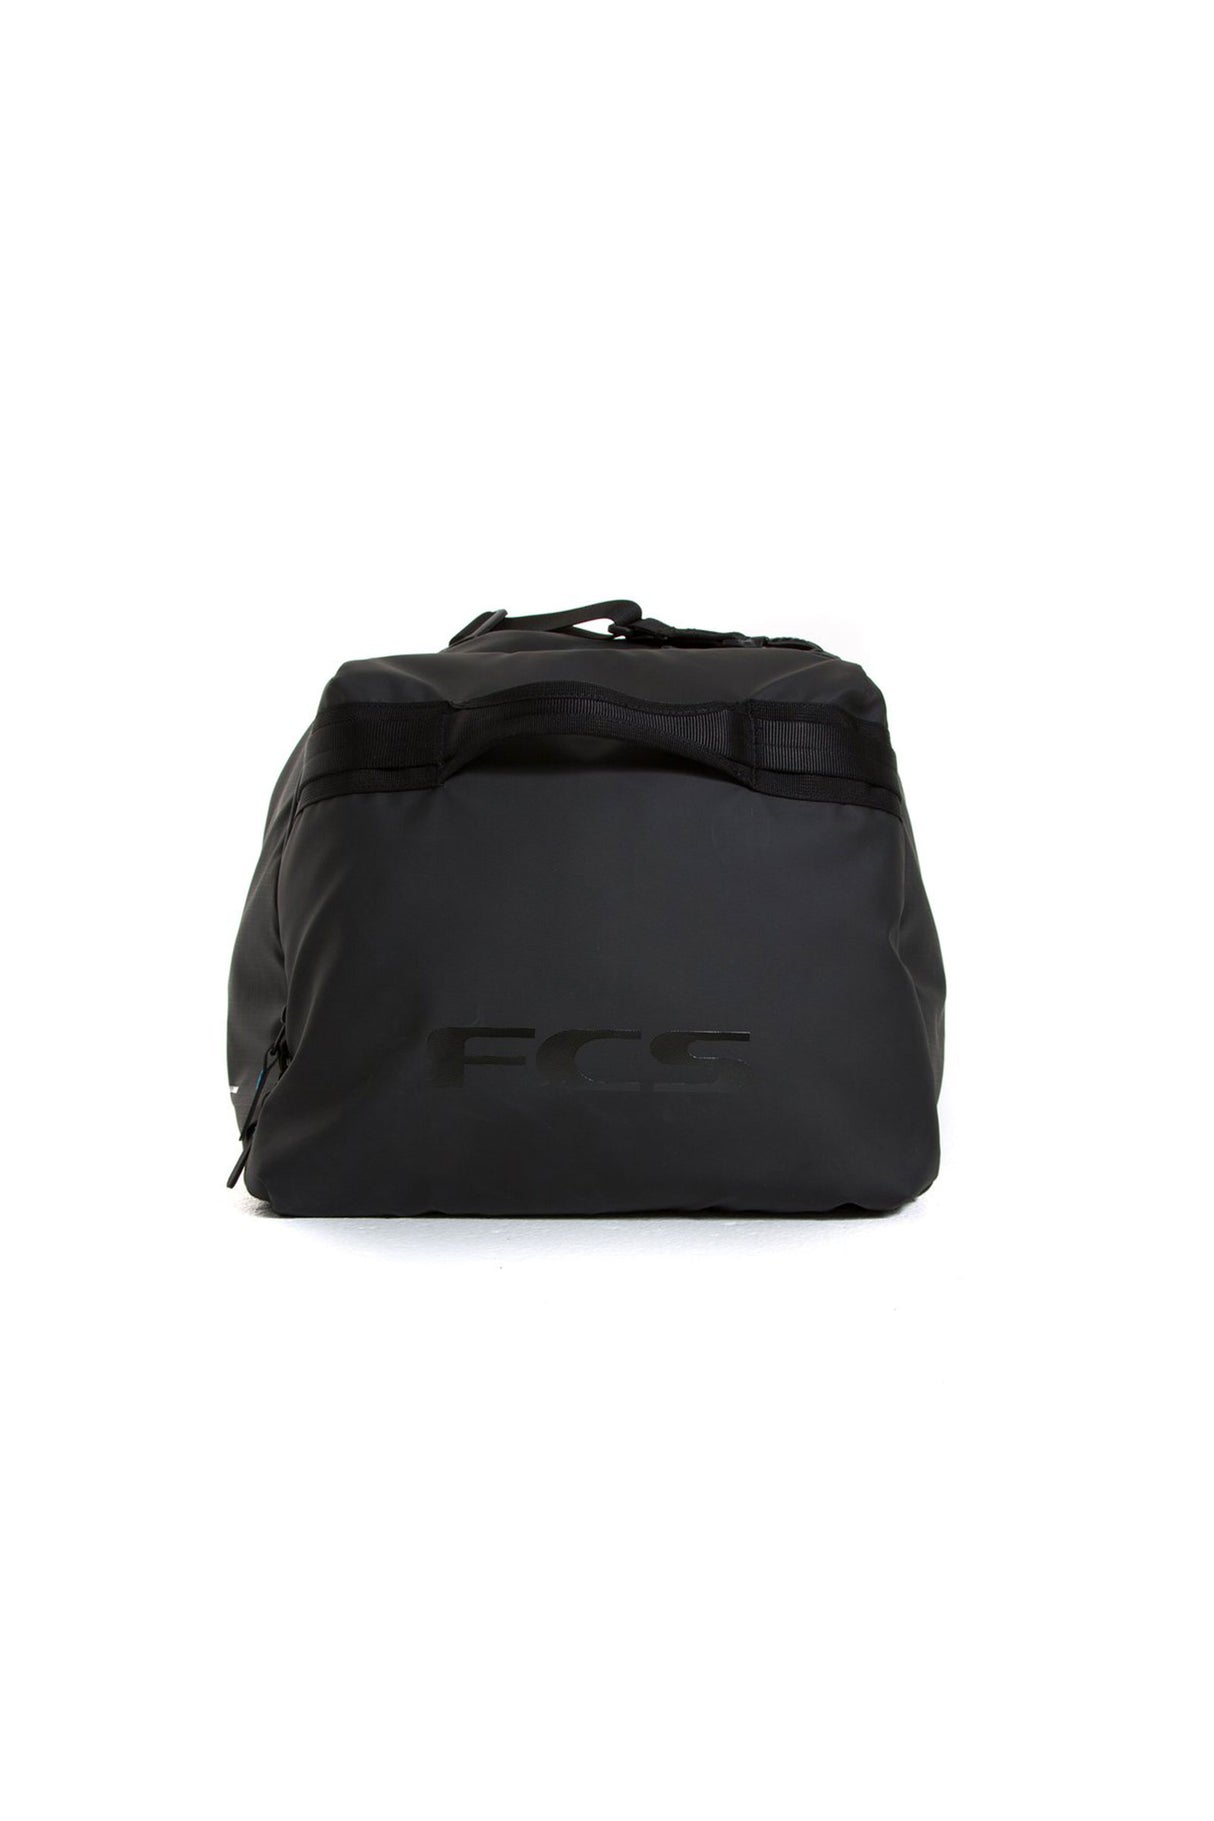 FCS Duffel Travel Bag